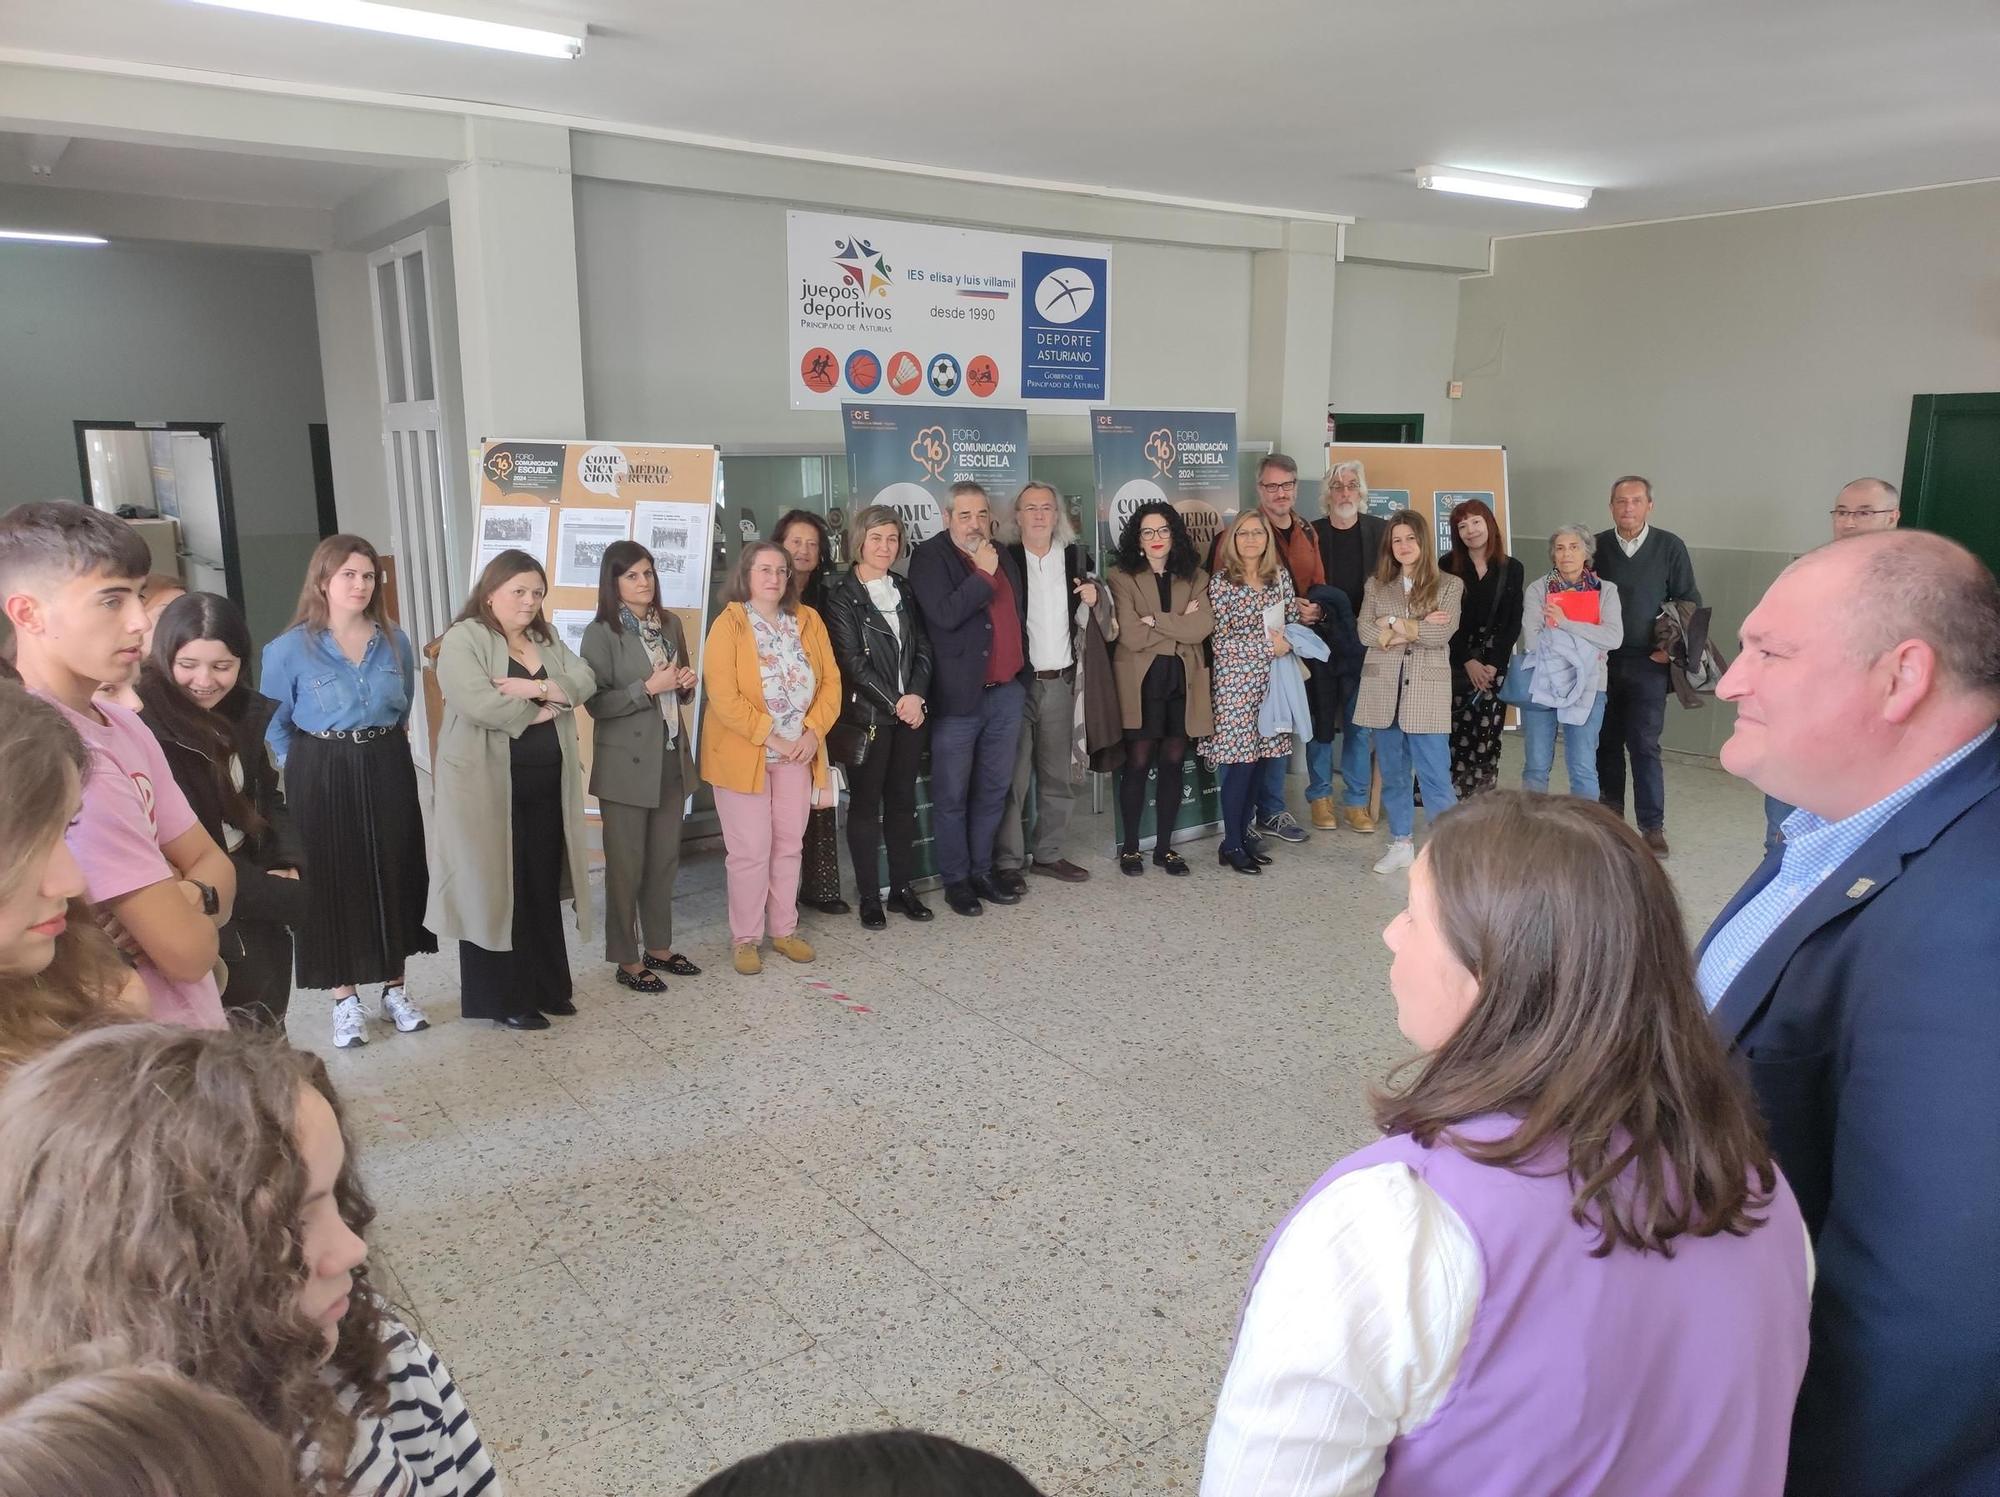 En imágenes: Espectacular jornada literaria para abrir el Foro Comunicación y Escuela de Vegadeo